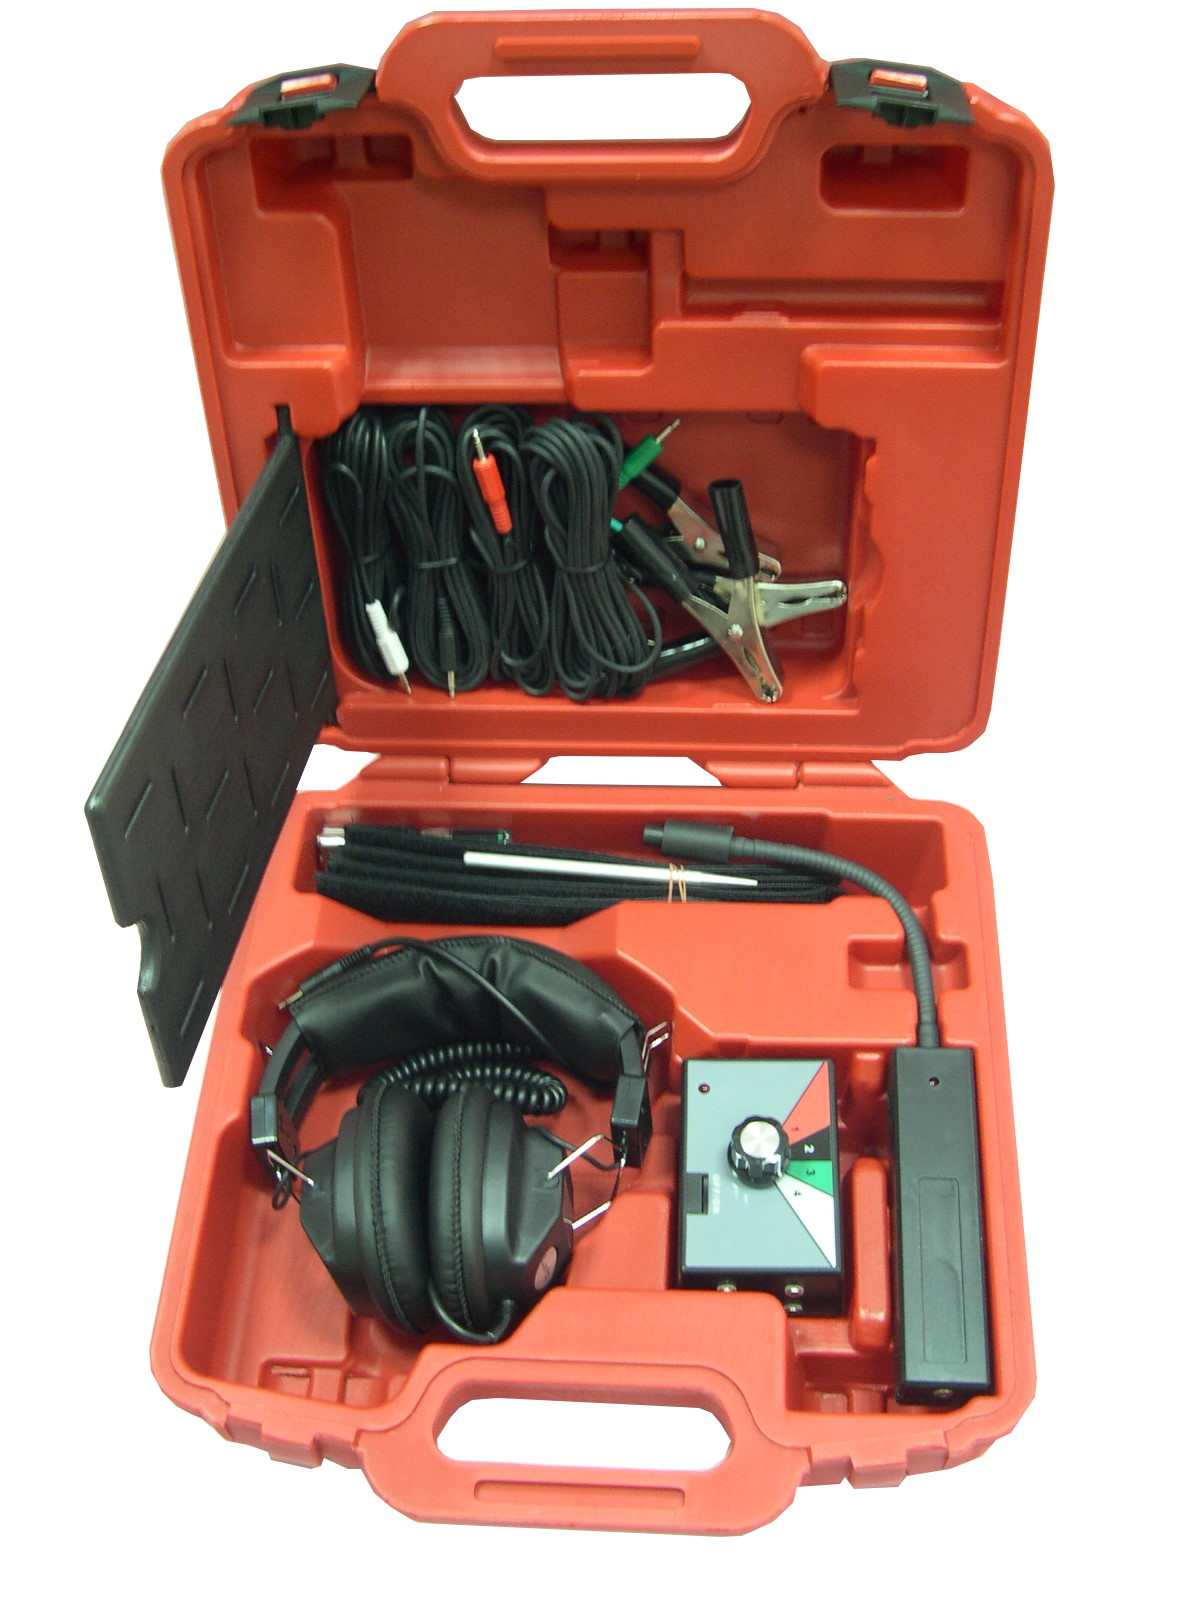 Elektro-Motorstethoskop mit Geräuschverstärker u. Mikrofonklemmen